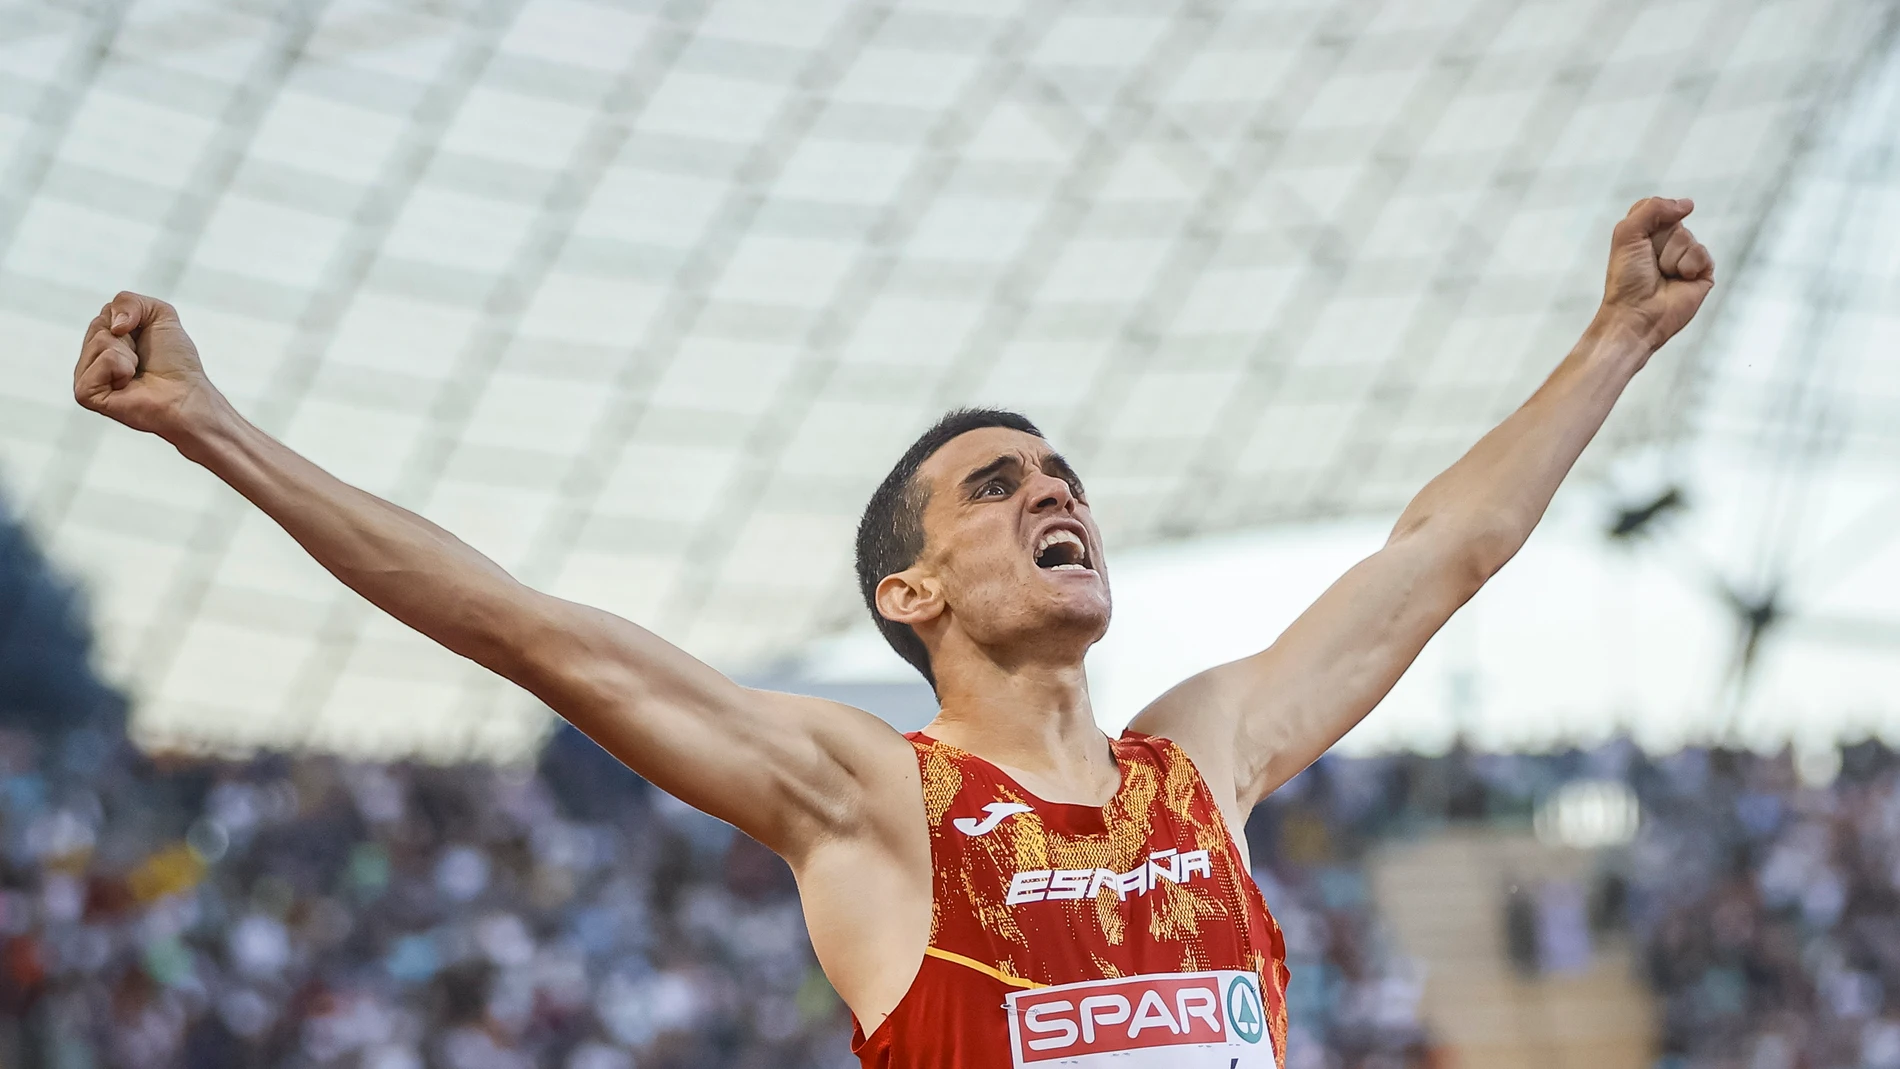 Mariano García celebra el oro en la prueba de 800 metros en el Campeonato Europeo de Múnich 2022